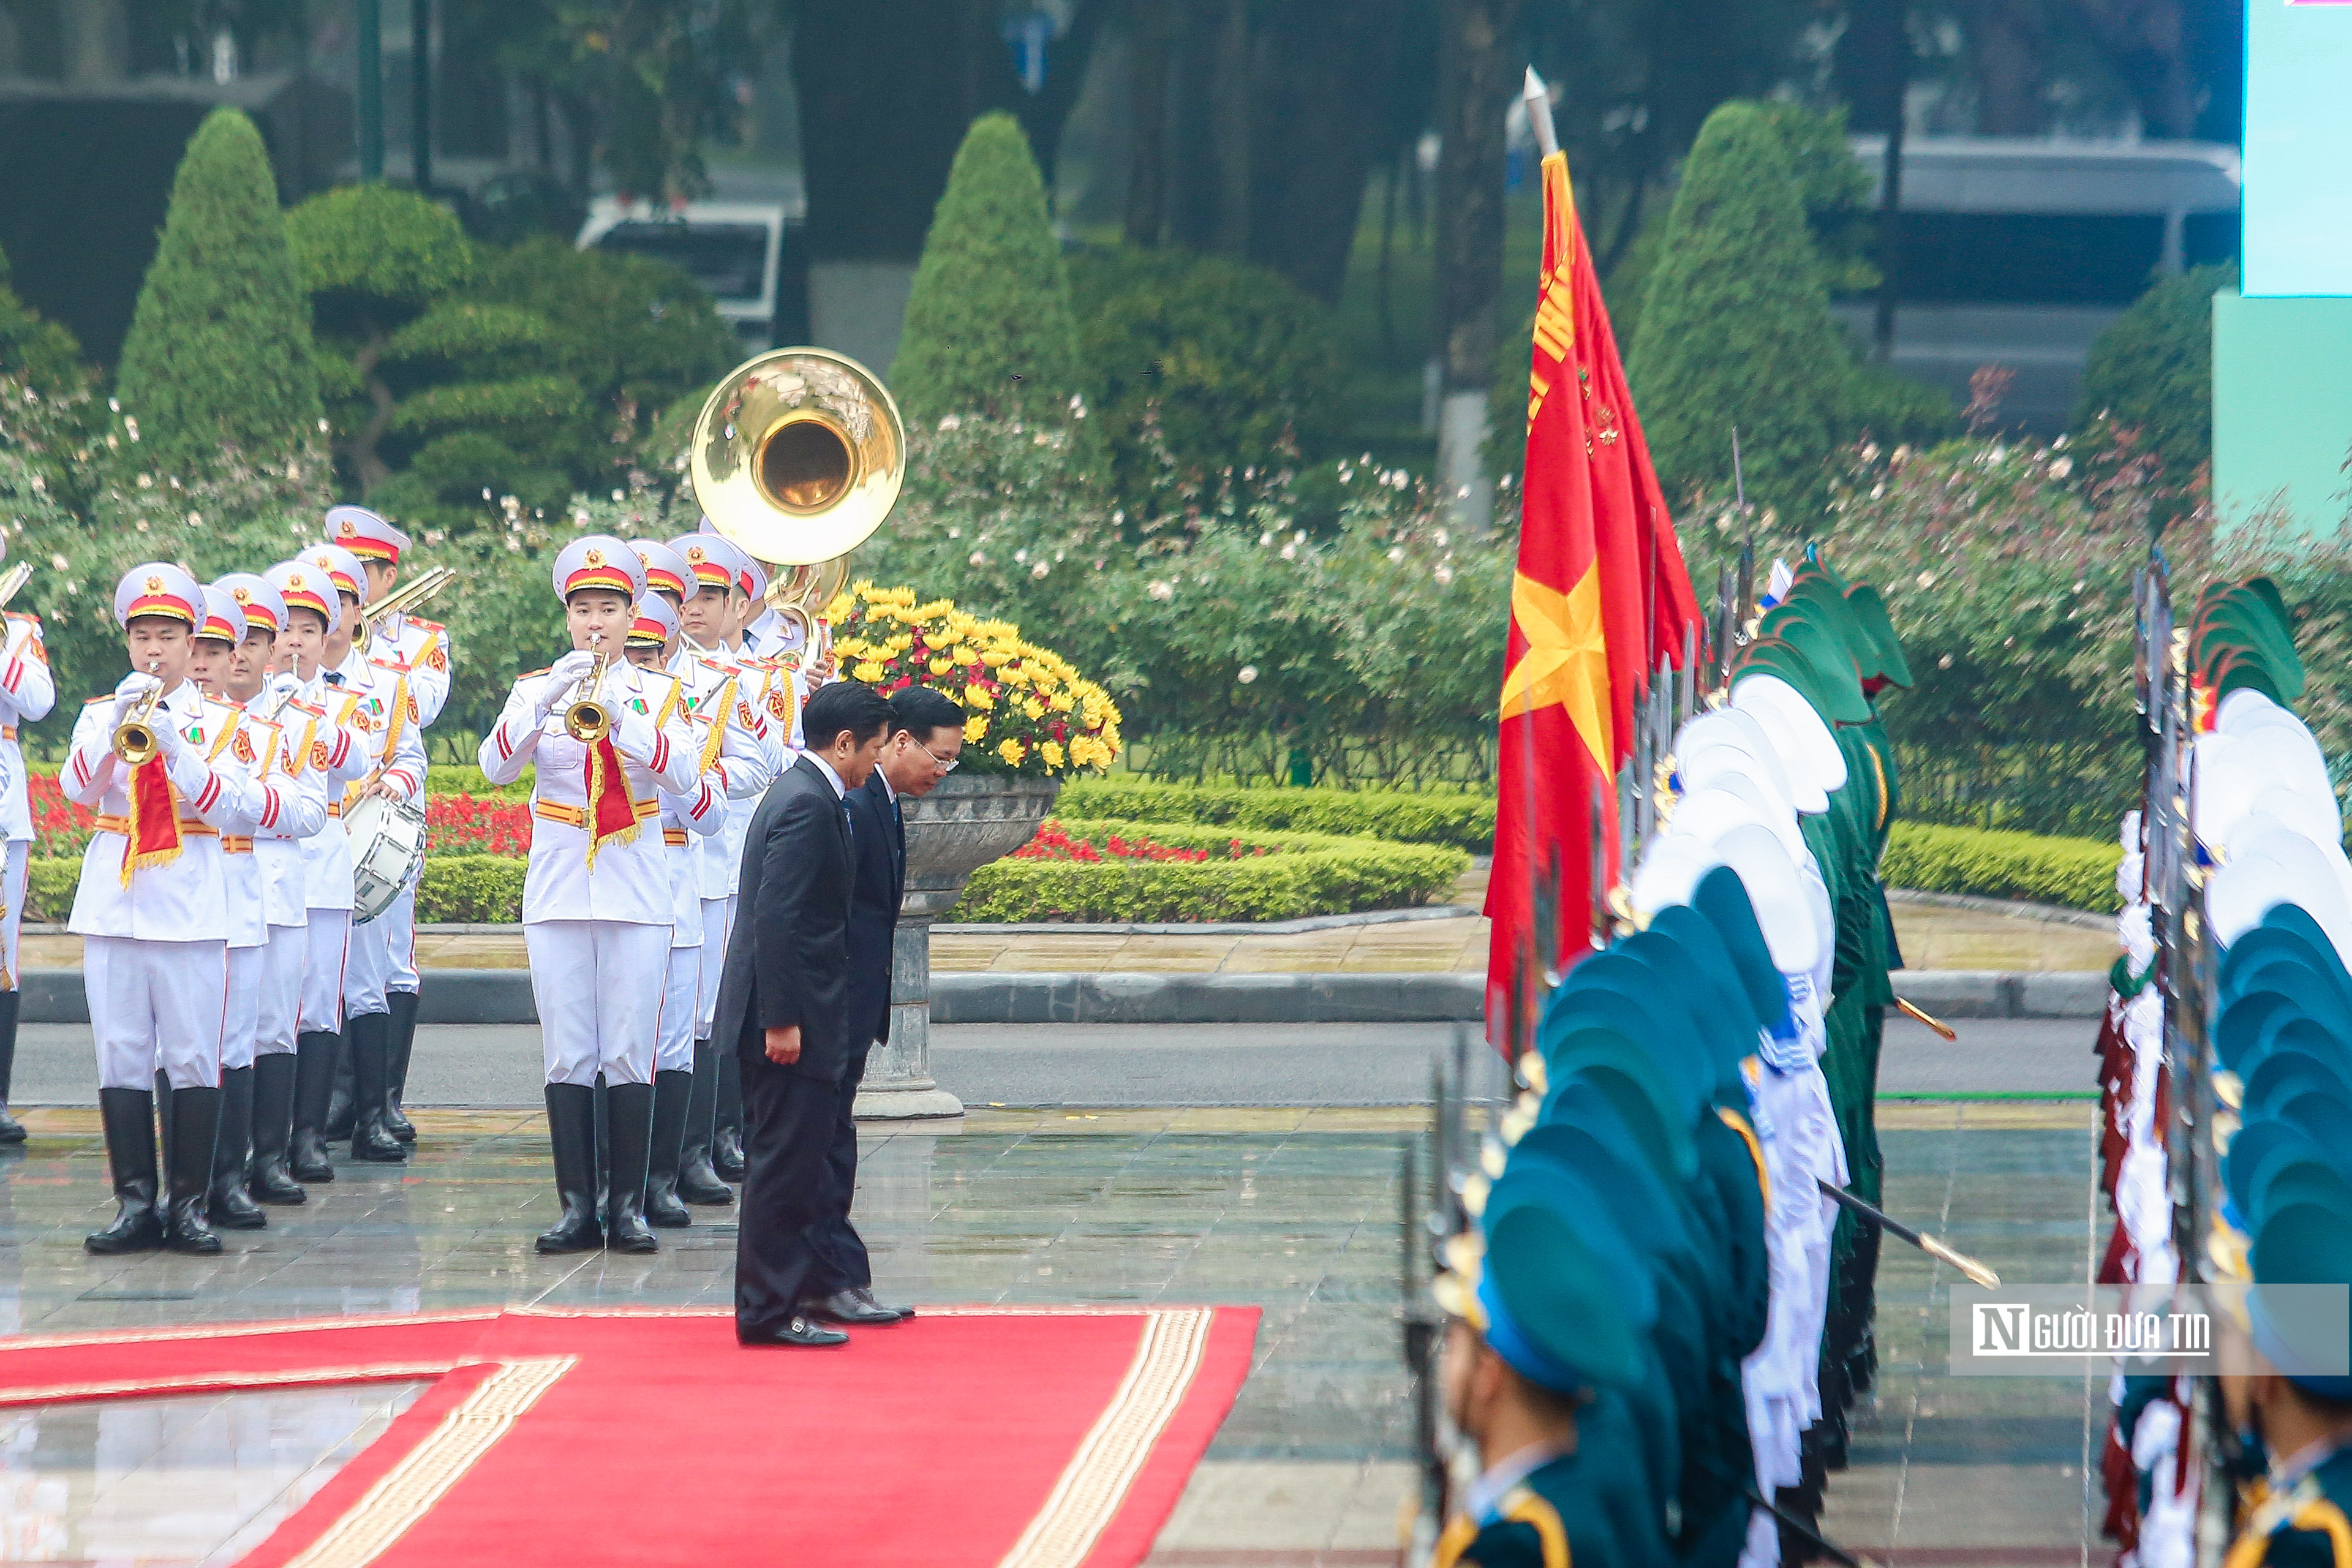 Tiêu điểm - Bắn 21 phát đại bác chào mừng Tổng thống Philippines thăm Việt Nam (Hình 7).